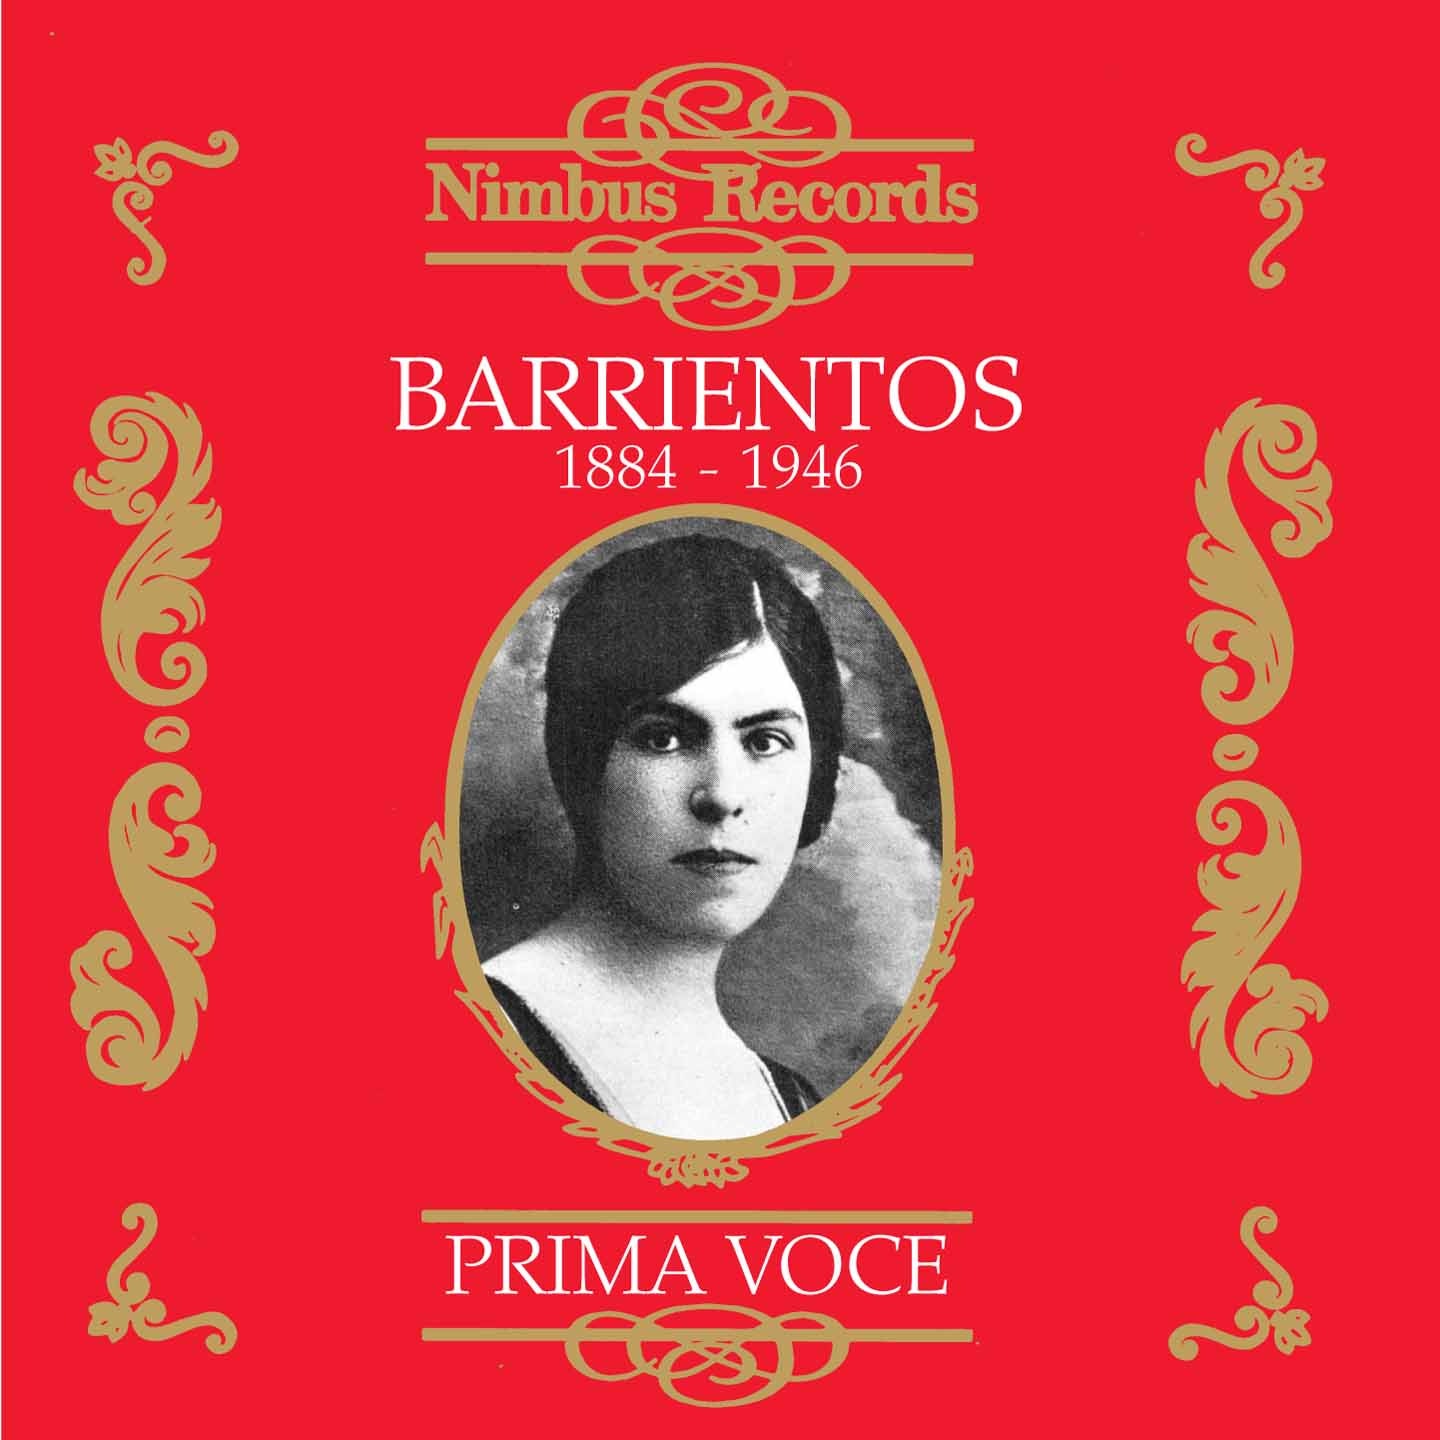 Maria Barrientos - 1916-1920